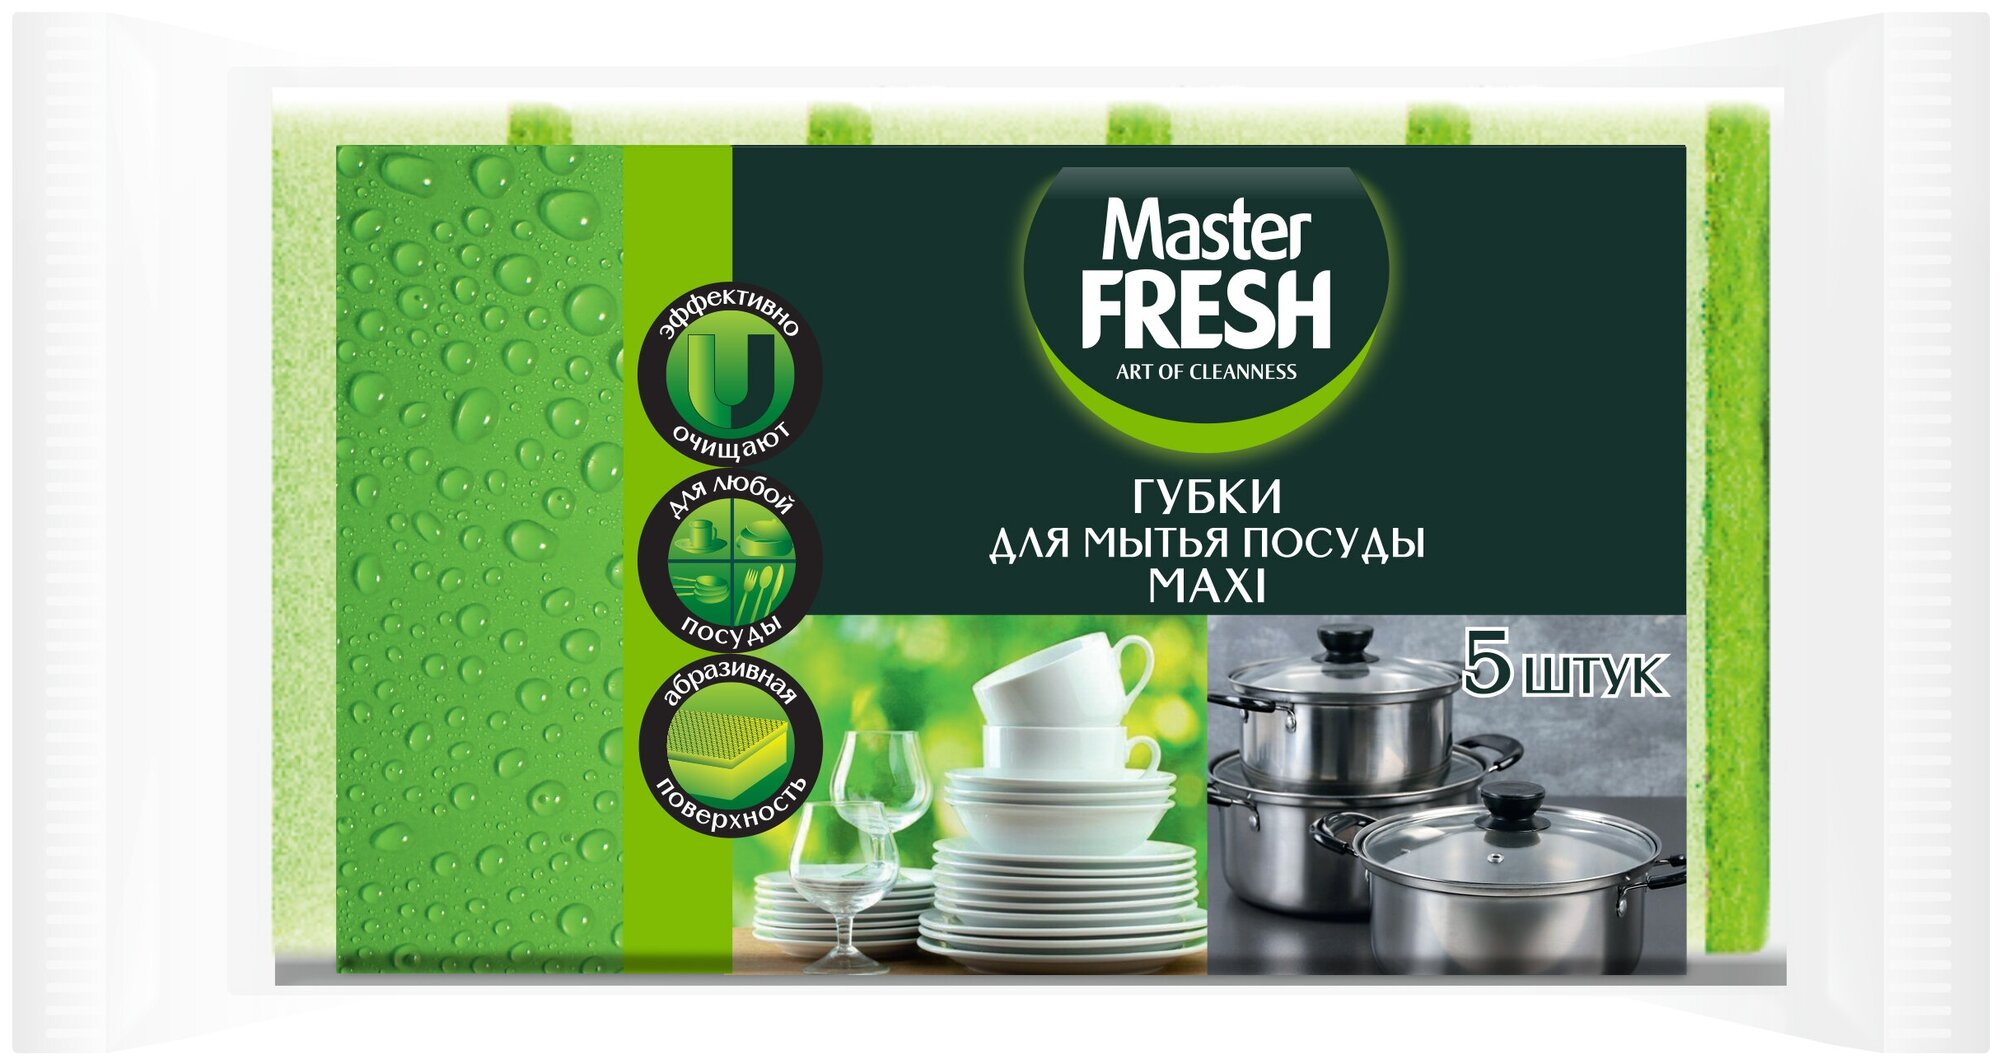 Губки для посуды Master FRESH Maxi, в ассортименте, 5 шт.